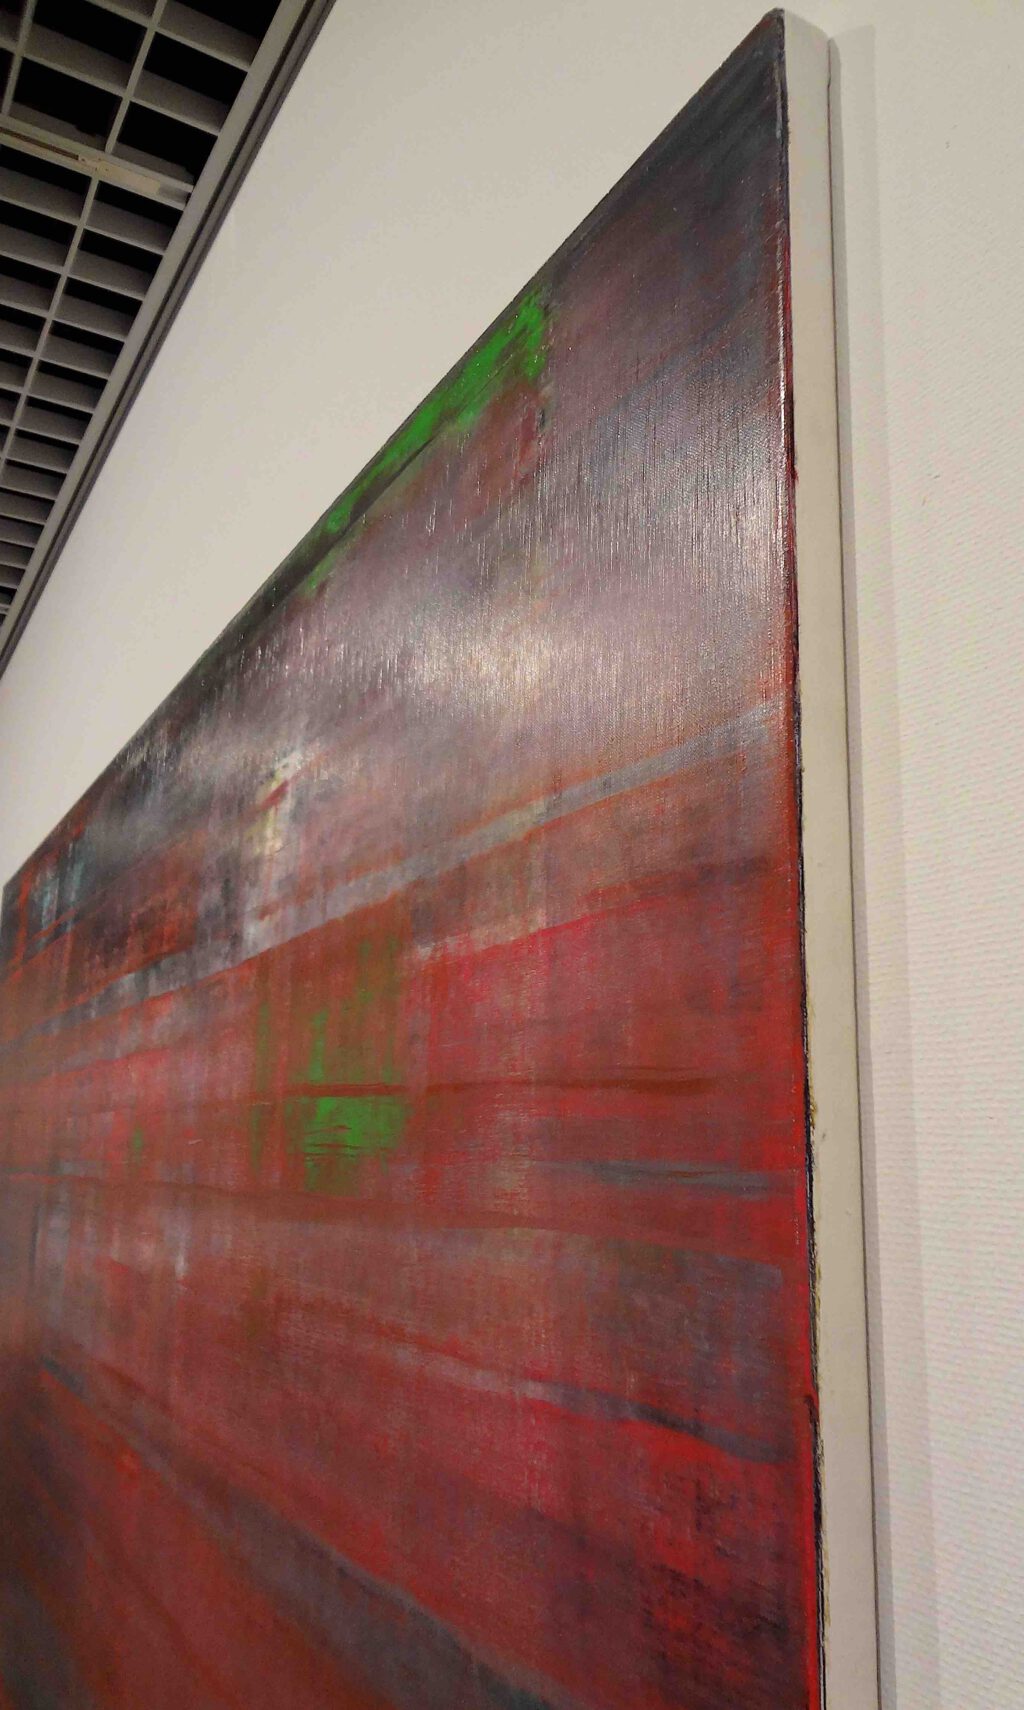 ゲルハルト・リヒター Gerhard Richter “Abstract Picture (Red) ” 1994, Oil on canvas, detail (The National Museum of Modern Art, Tokyo 東京国立近代美術館)